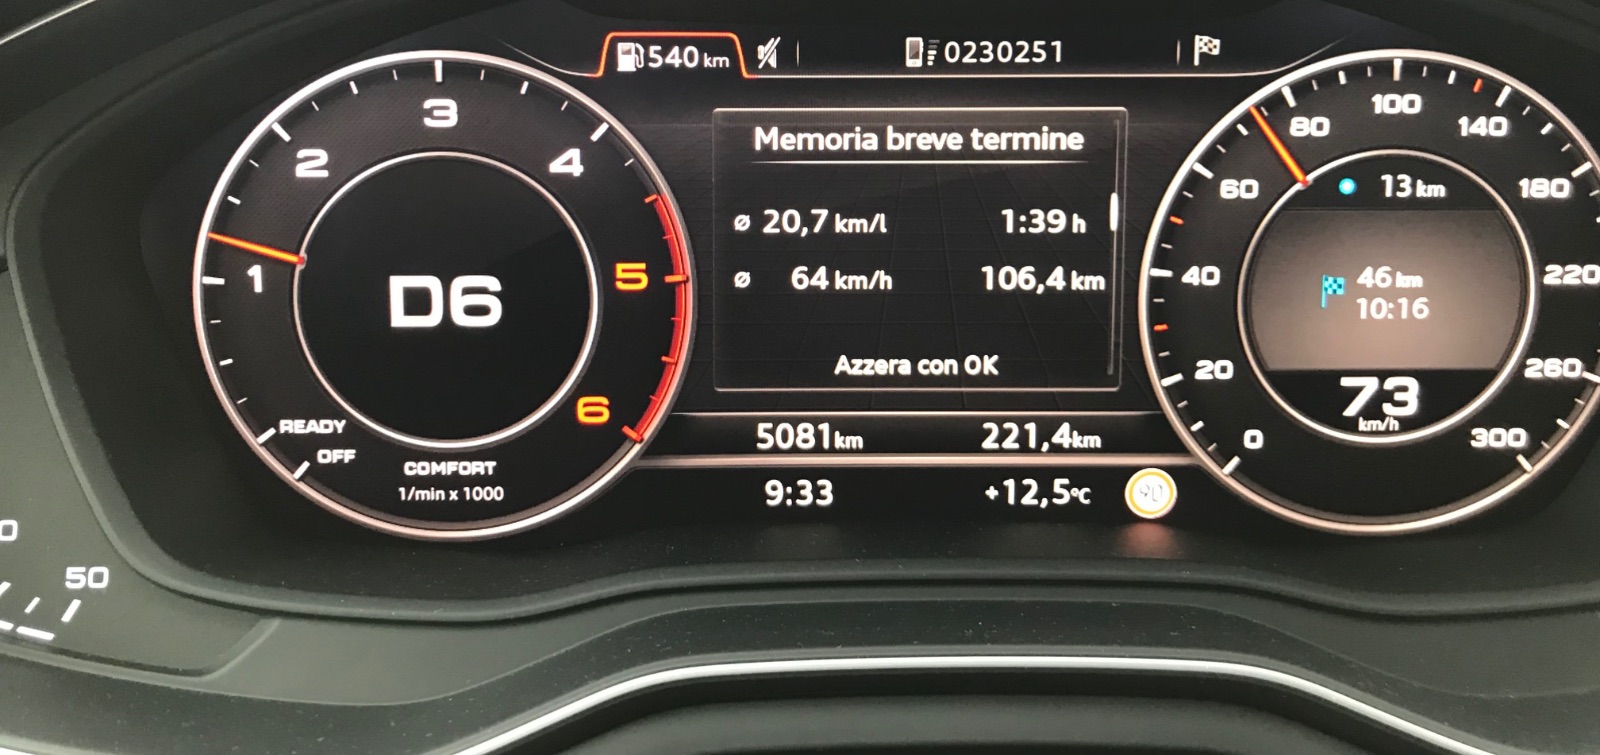 Audi A4 consumi